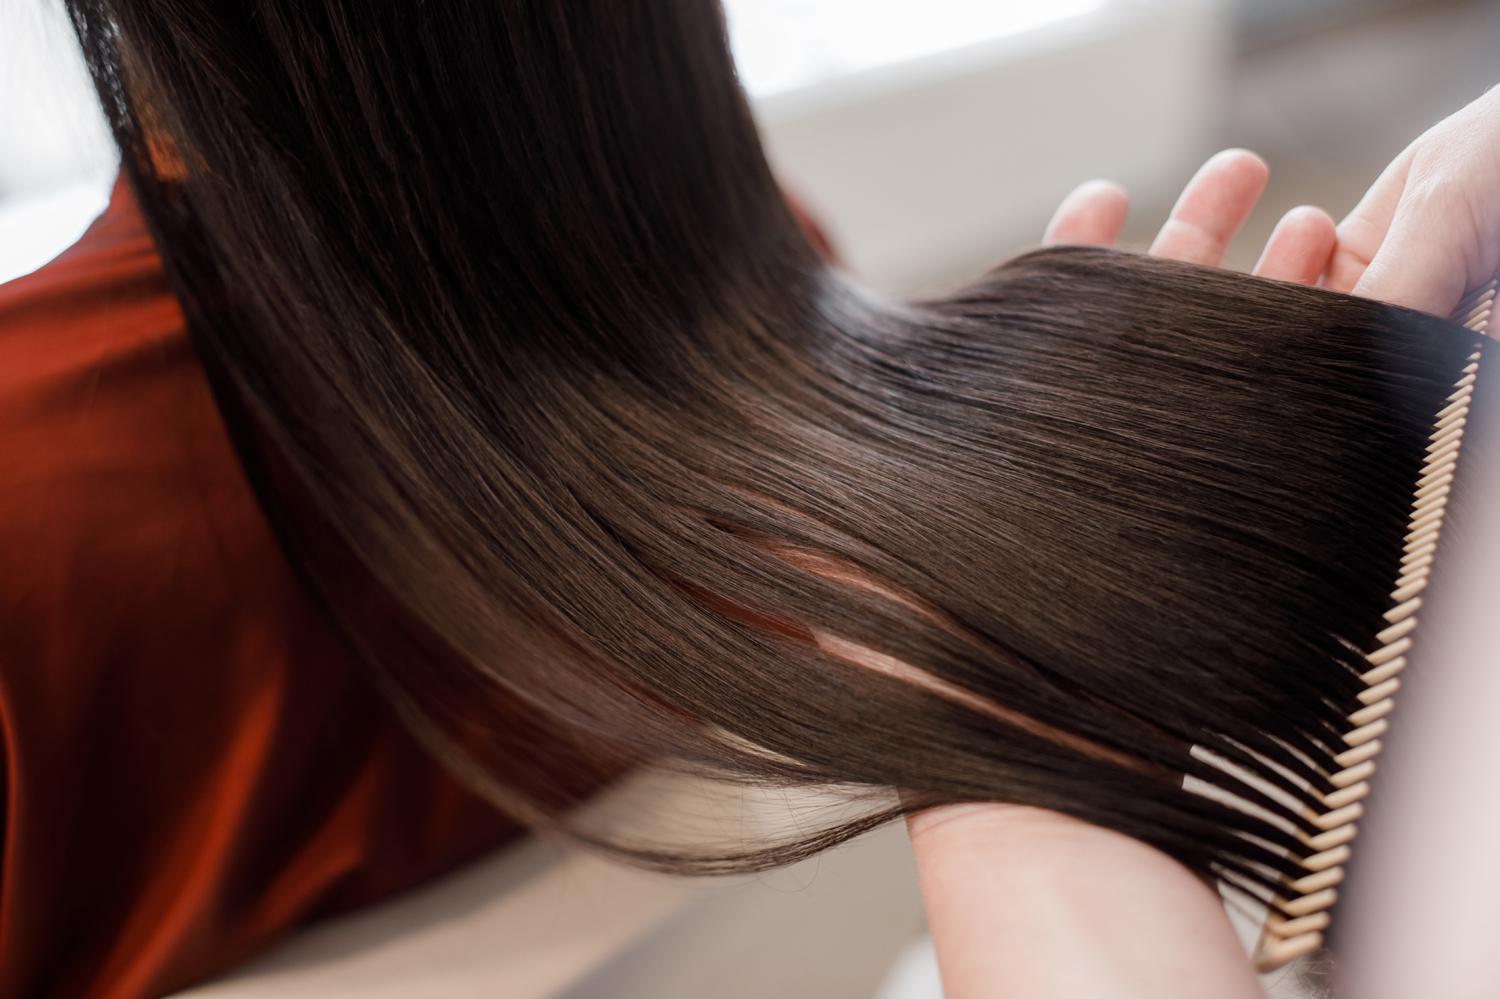 Процесс выпрямления волос лучше доверить опытному мастеру и не экспериментировать в домашних условиях